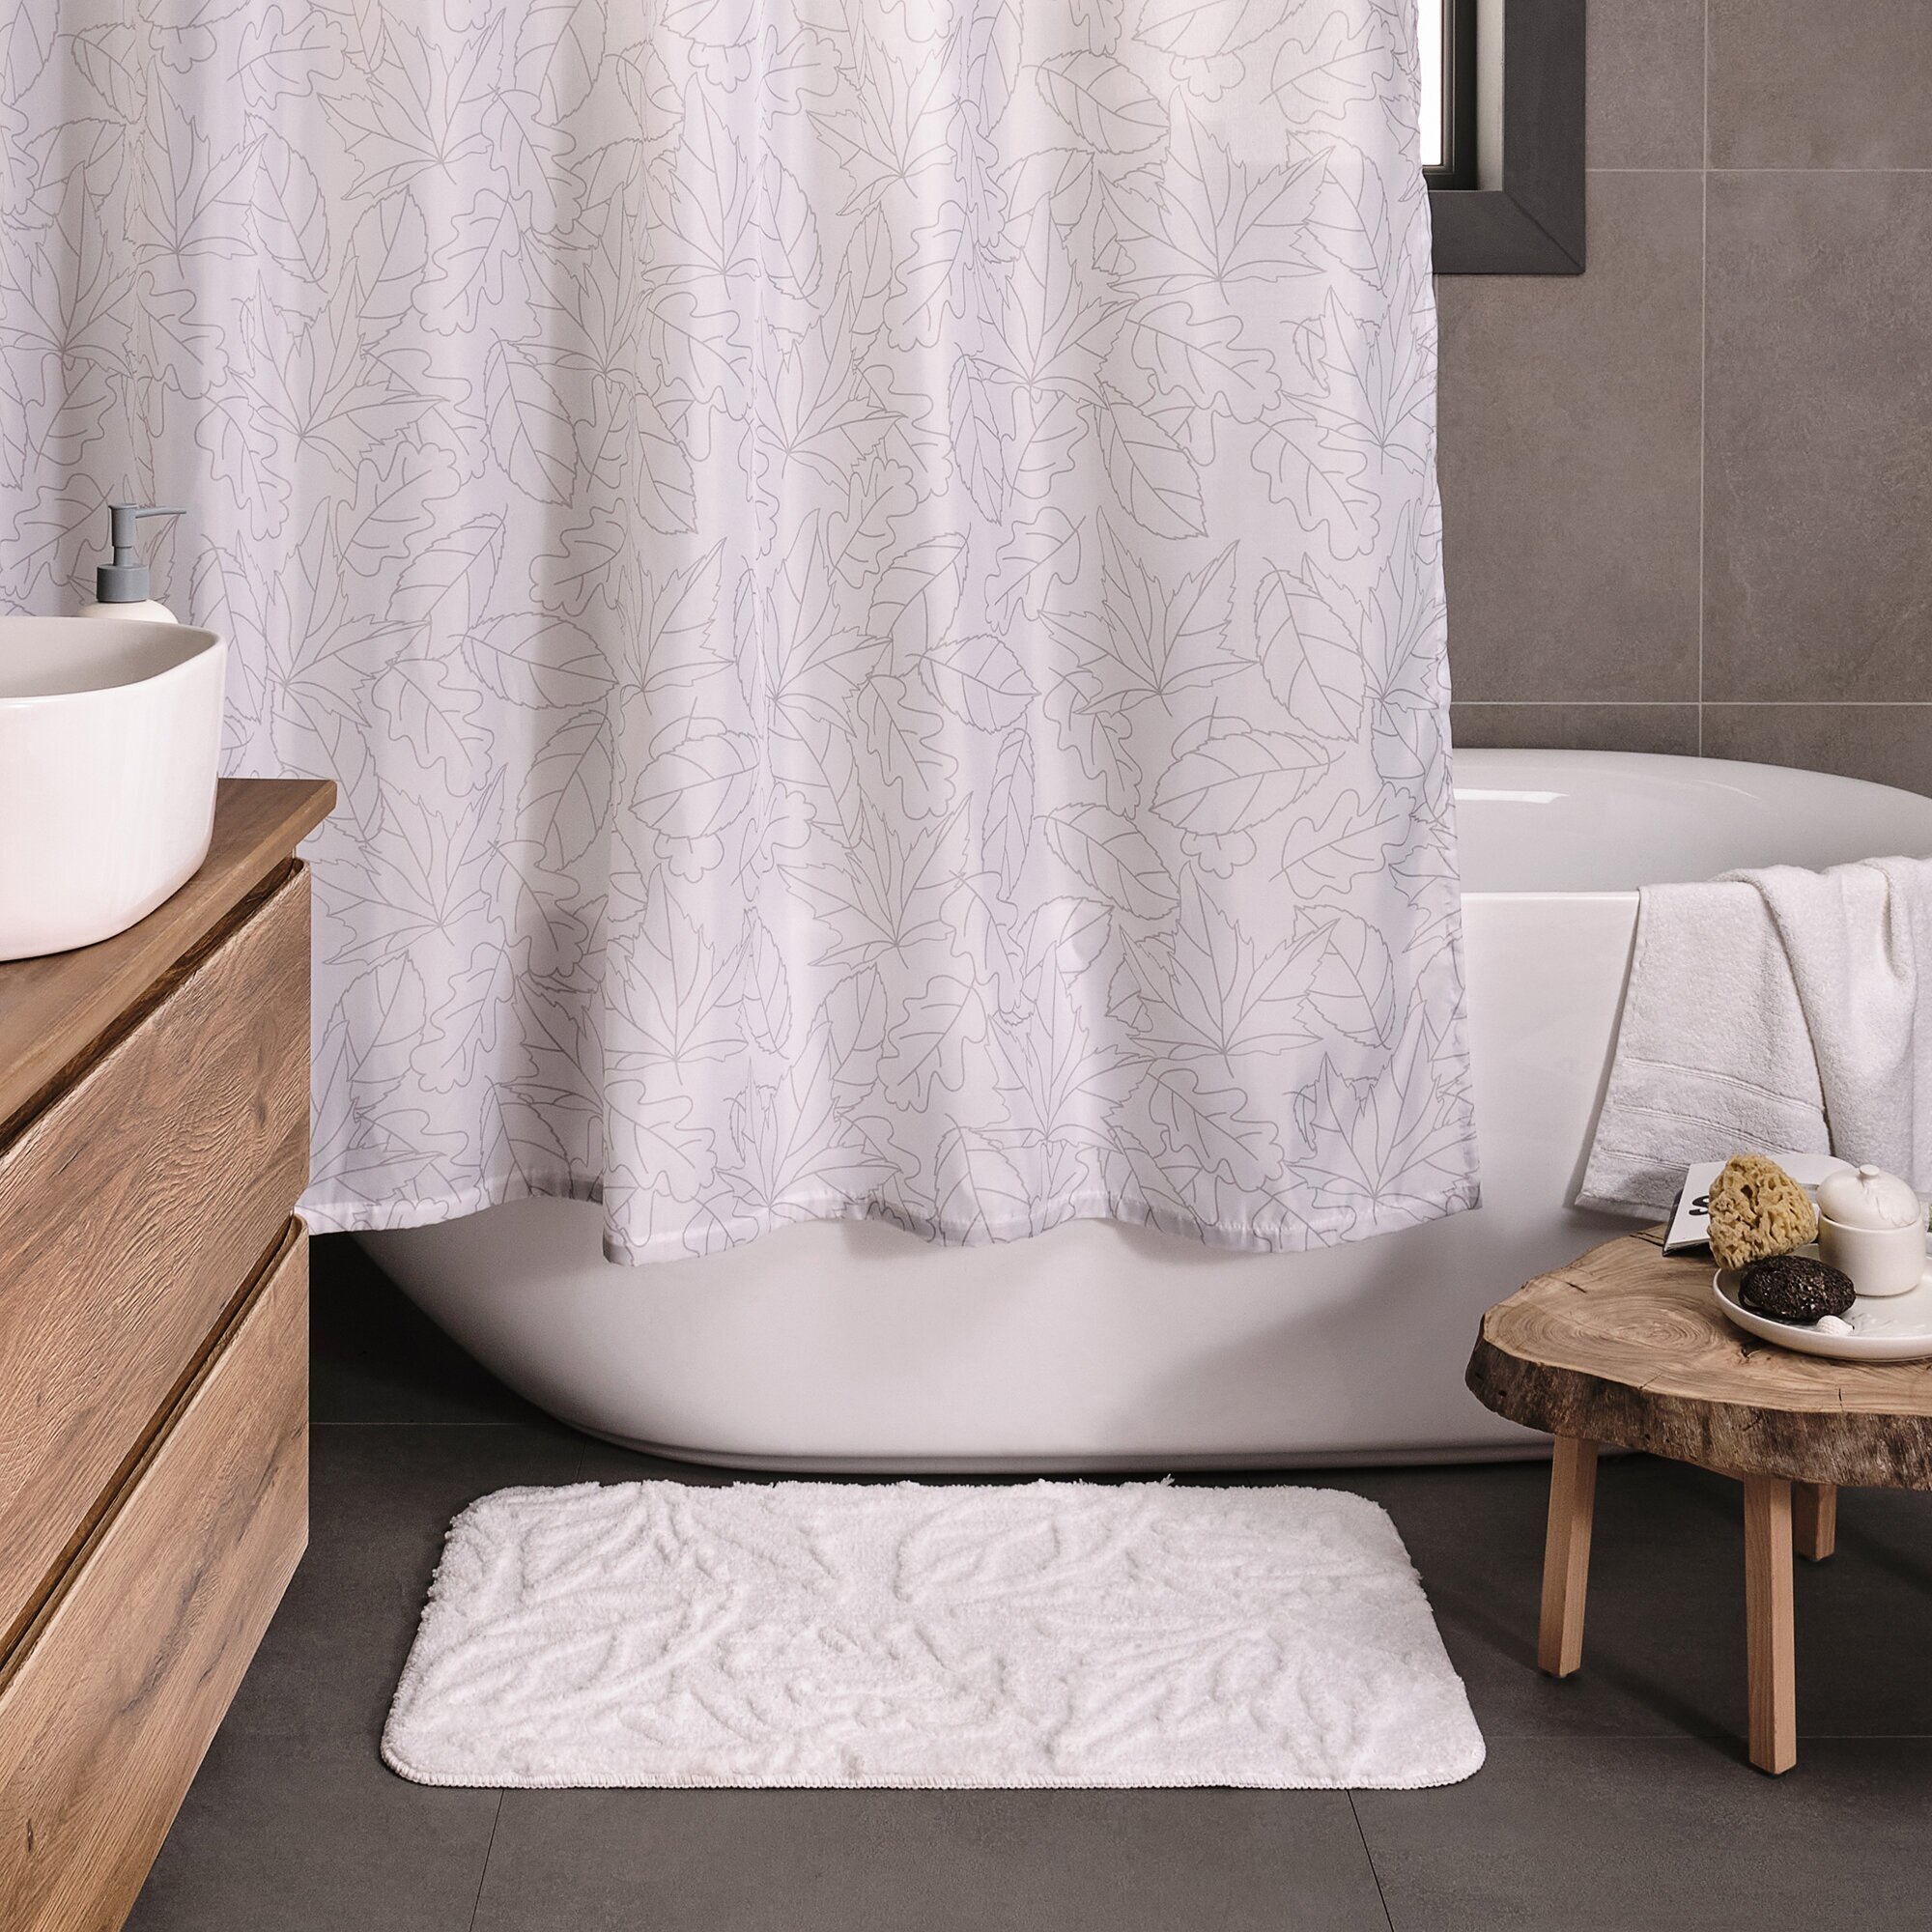 Занавеска (штора) Shelest для ванной комнаты тканевая 180х200 см, цвет белый серый